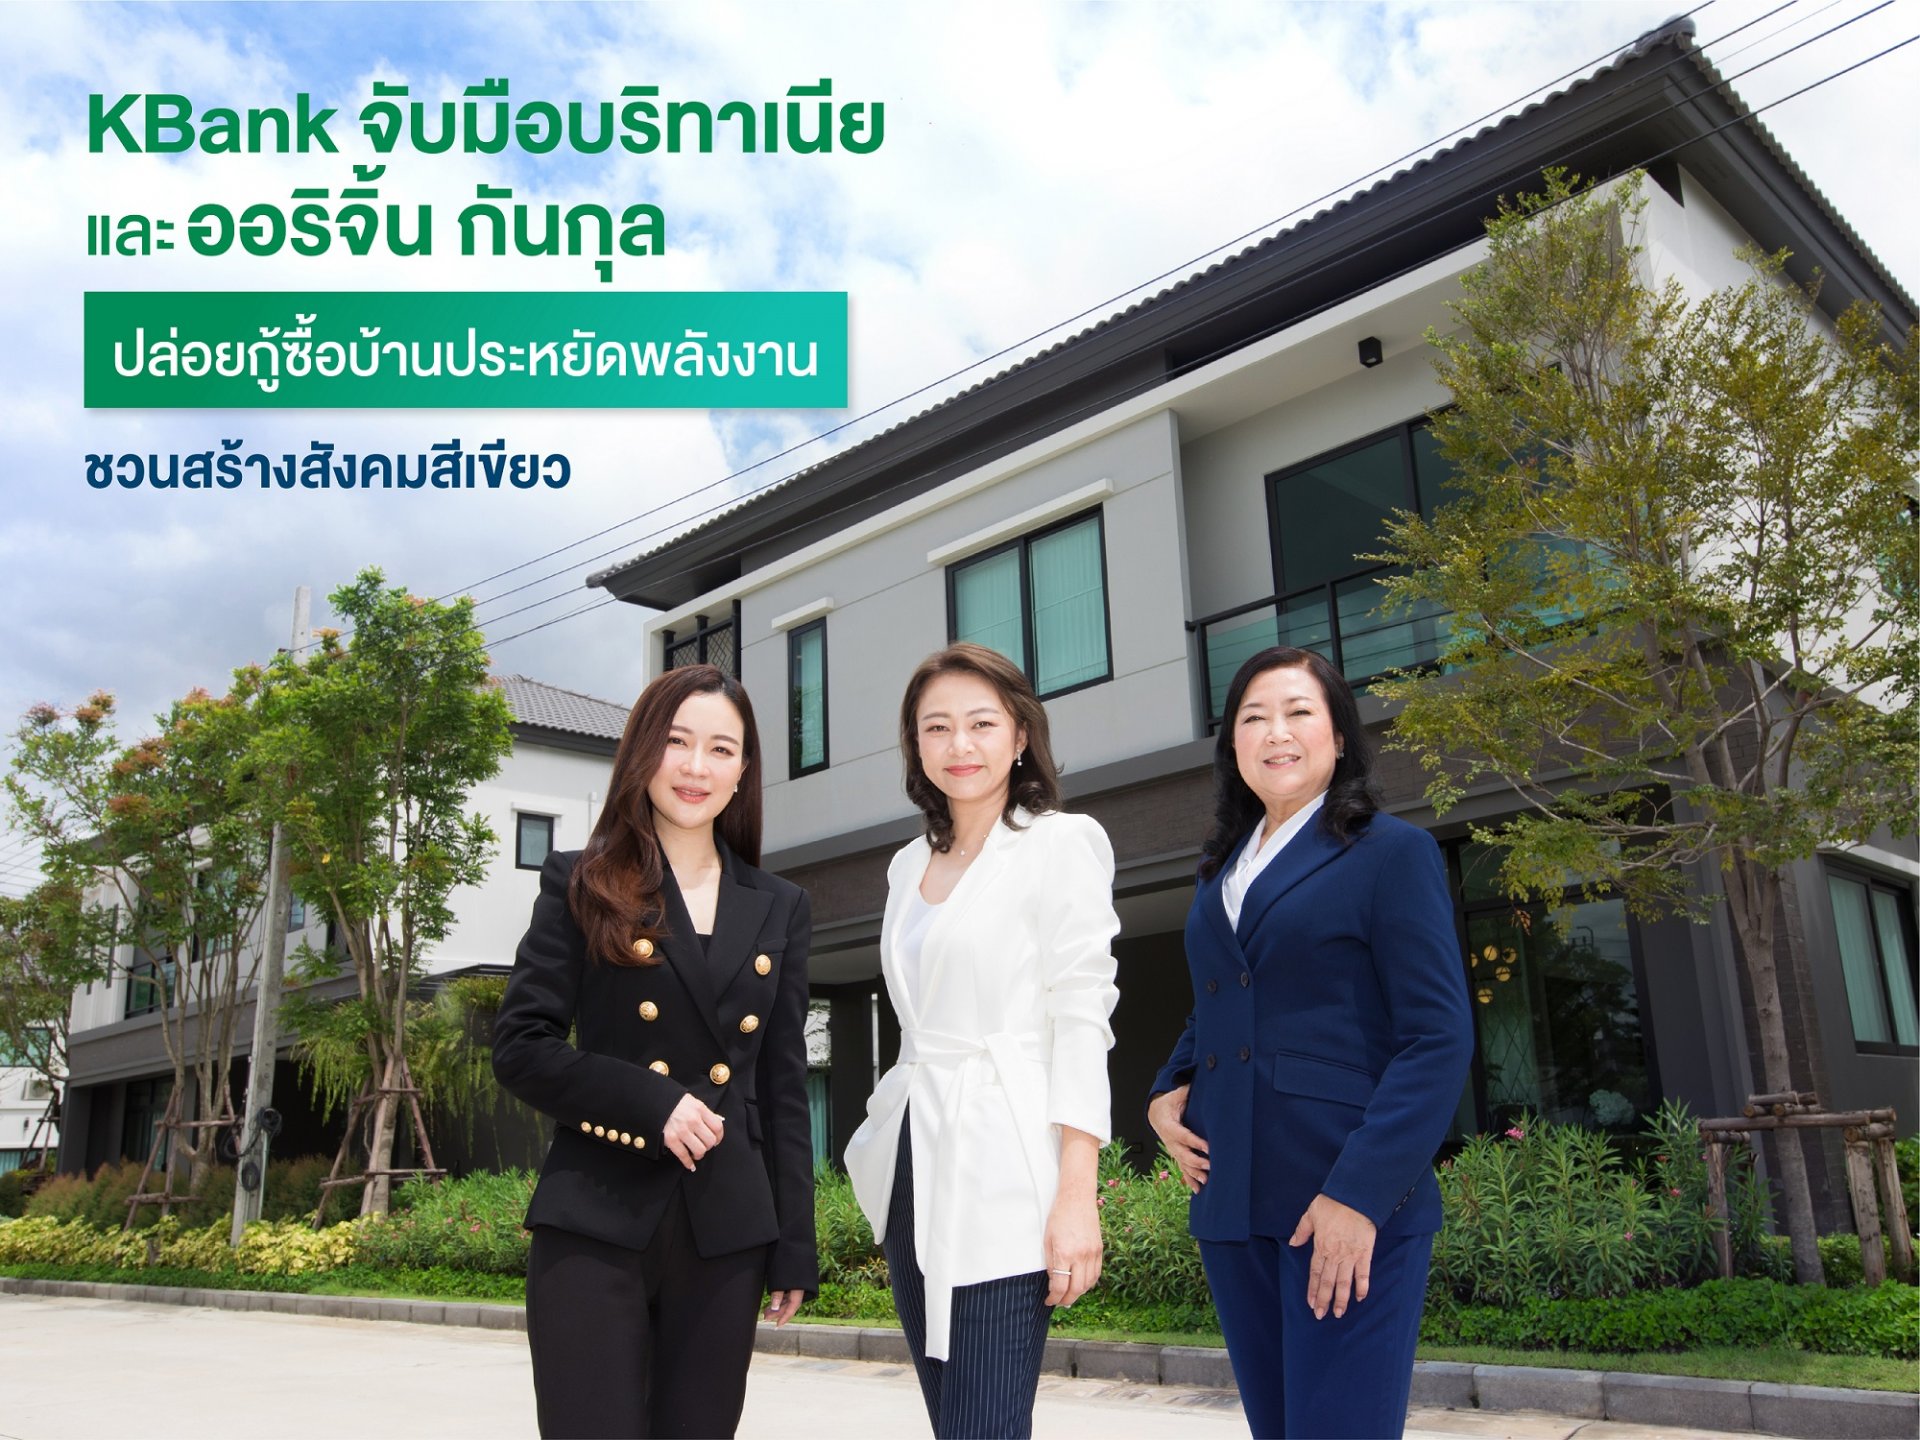 BRI และ GUNKUL กระตุ้นคนไทยติดตั้งโซลาร์ รูฟท็อป ประสานกสิกรไทยจัดสินเชื่อบ้านสีเขียว ดอกเบี้ยพิเศษ